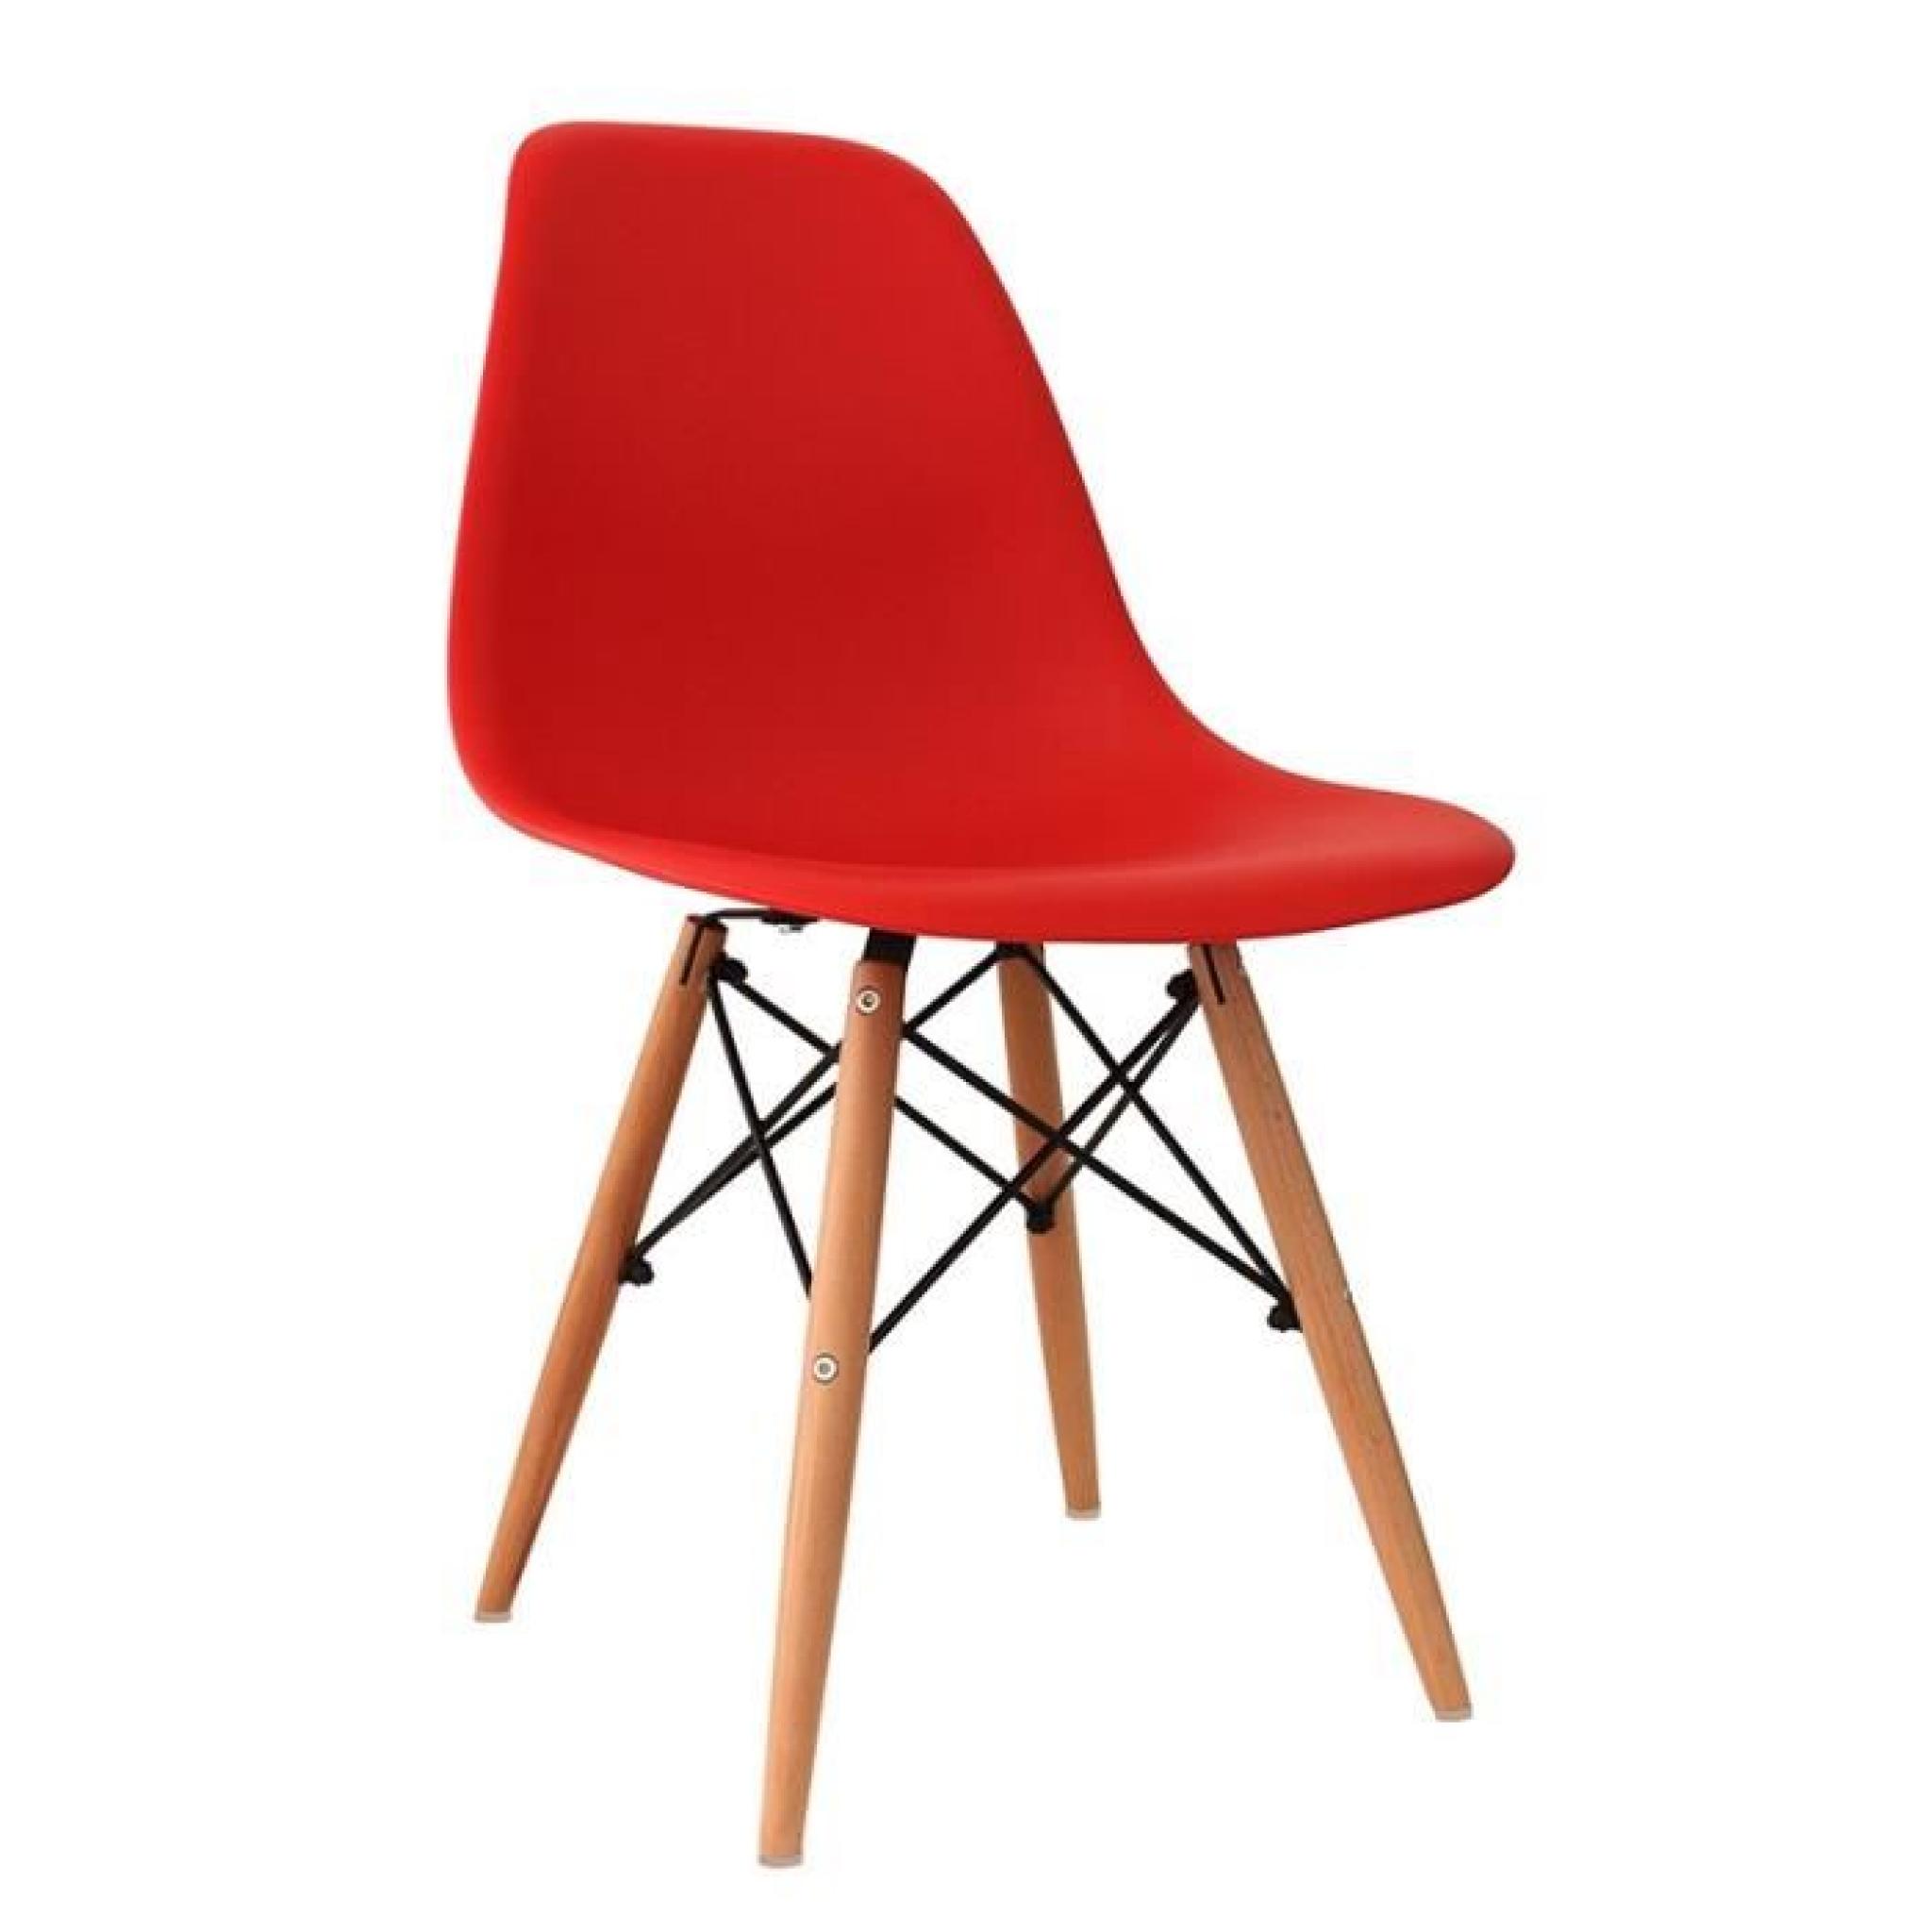 Chaise design rouge pieds en bois RETRO lot de 4 pas cher